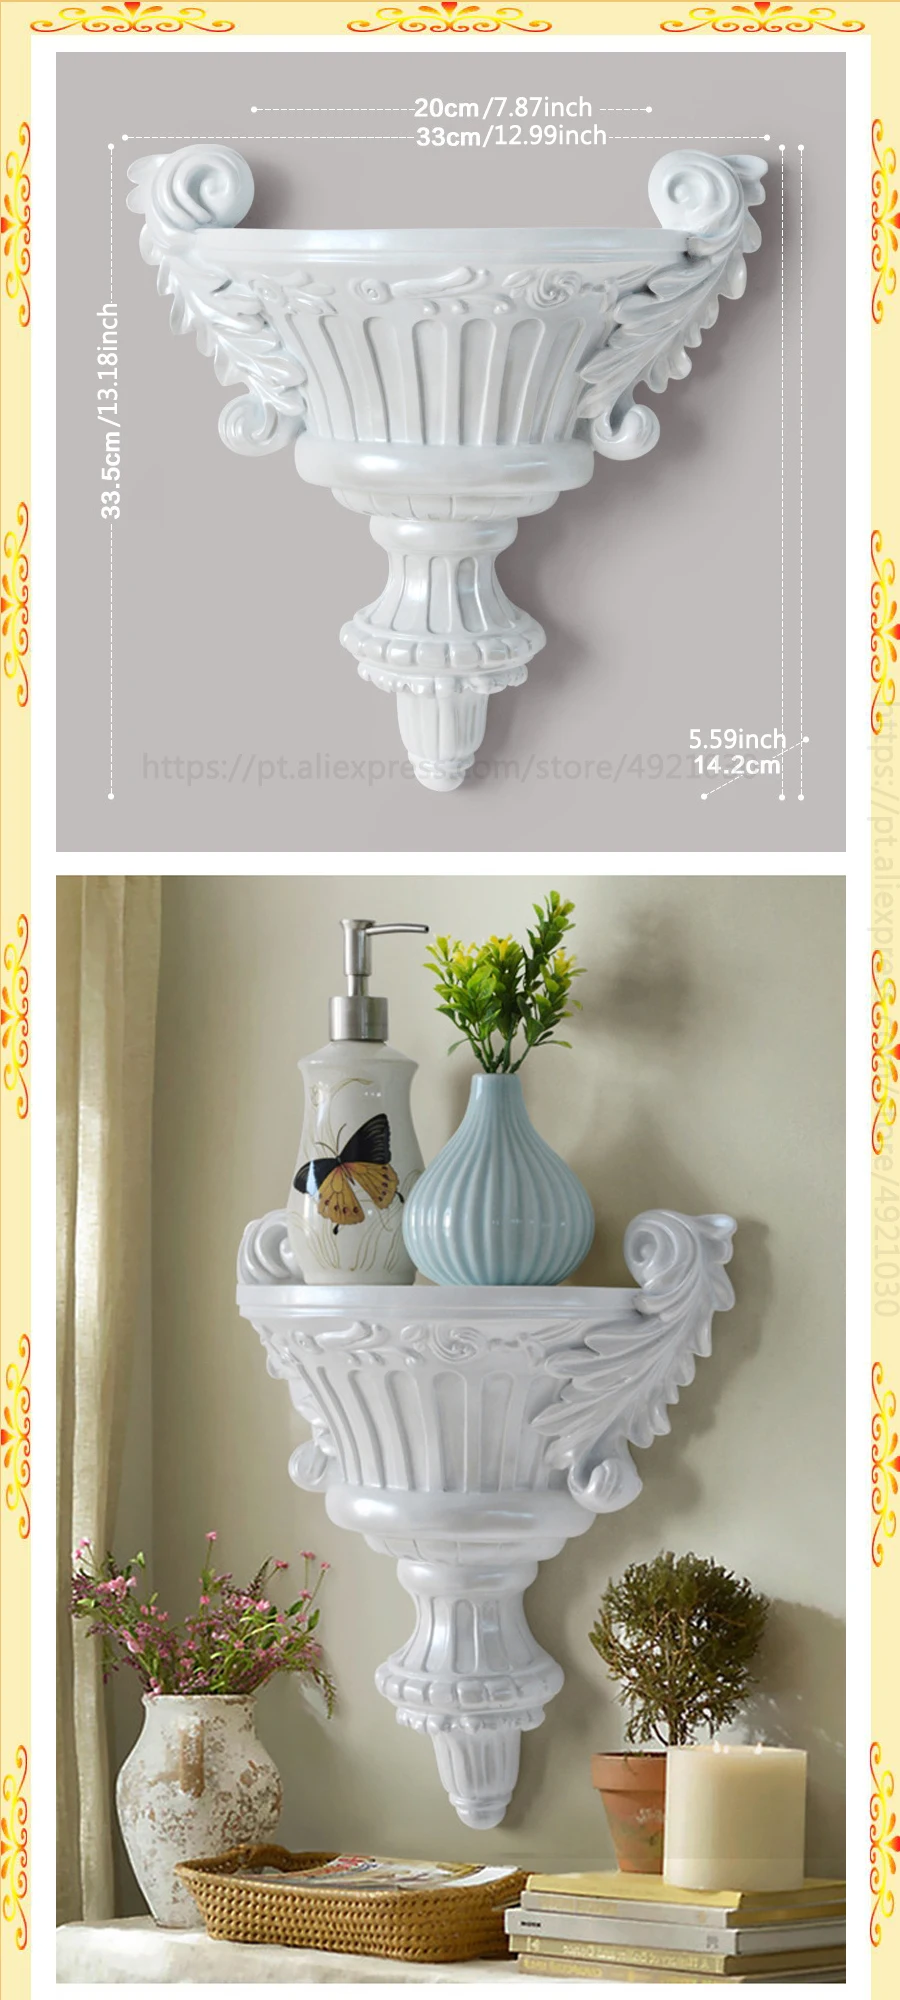 Европейская домашняя декоративная настенная полимерная полка, ваза, 3D настенная стойка, держатель для гостиной, Фреска, декор для ванной комнаты, полка для хранения